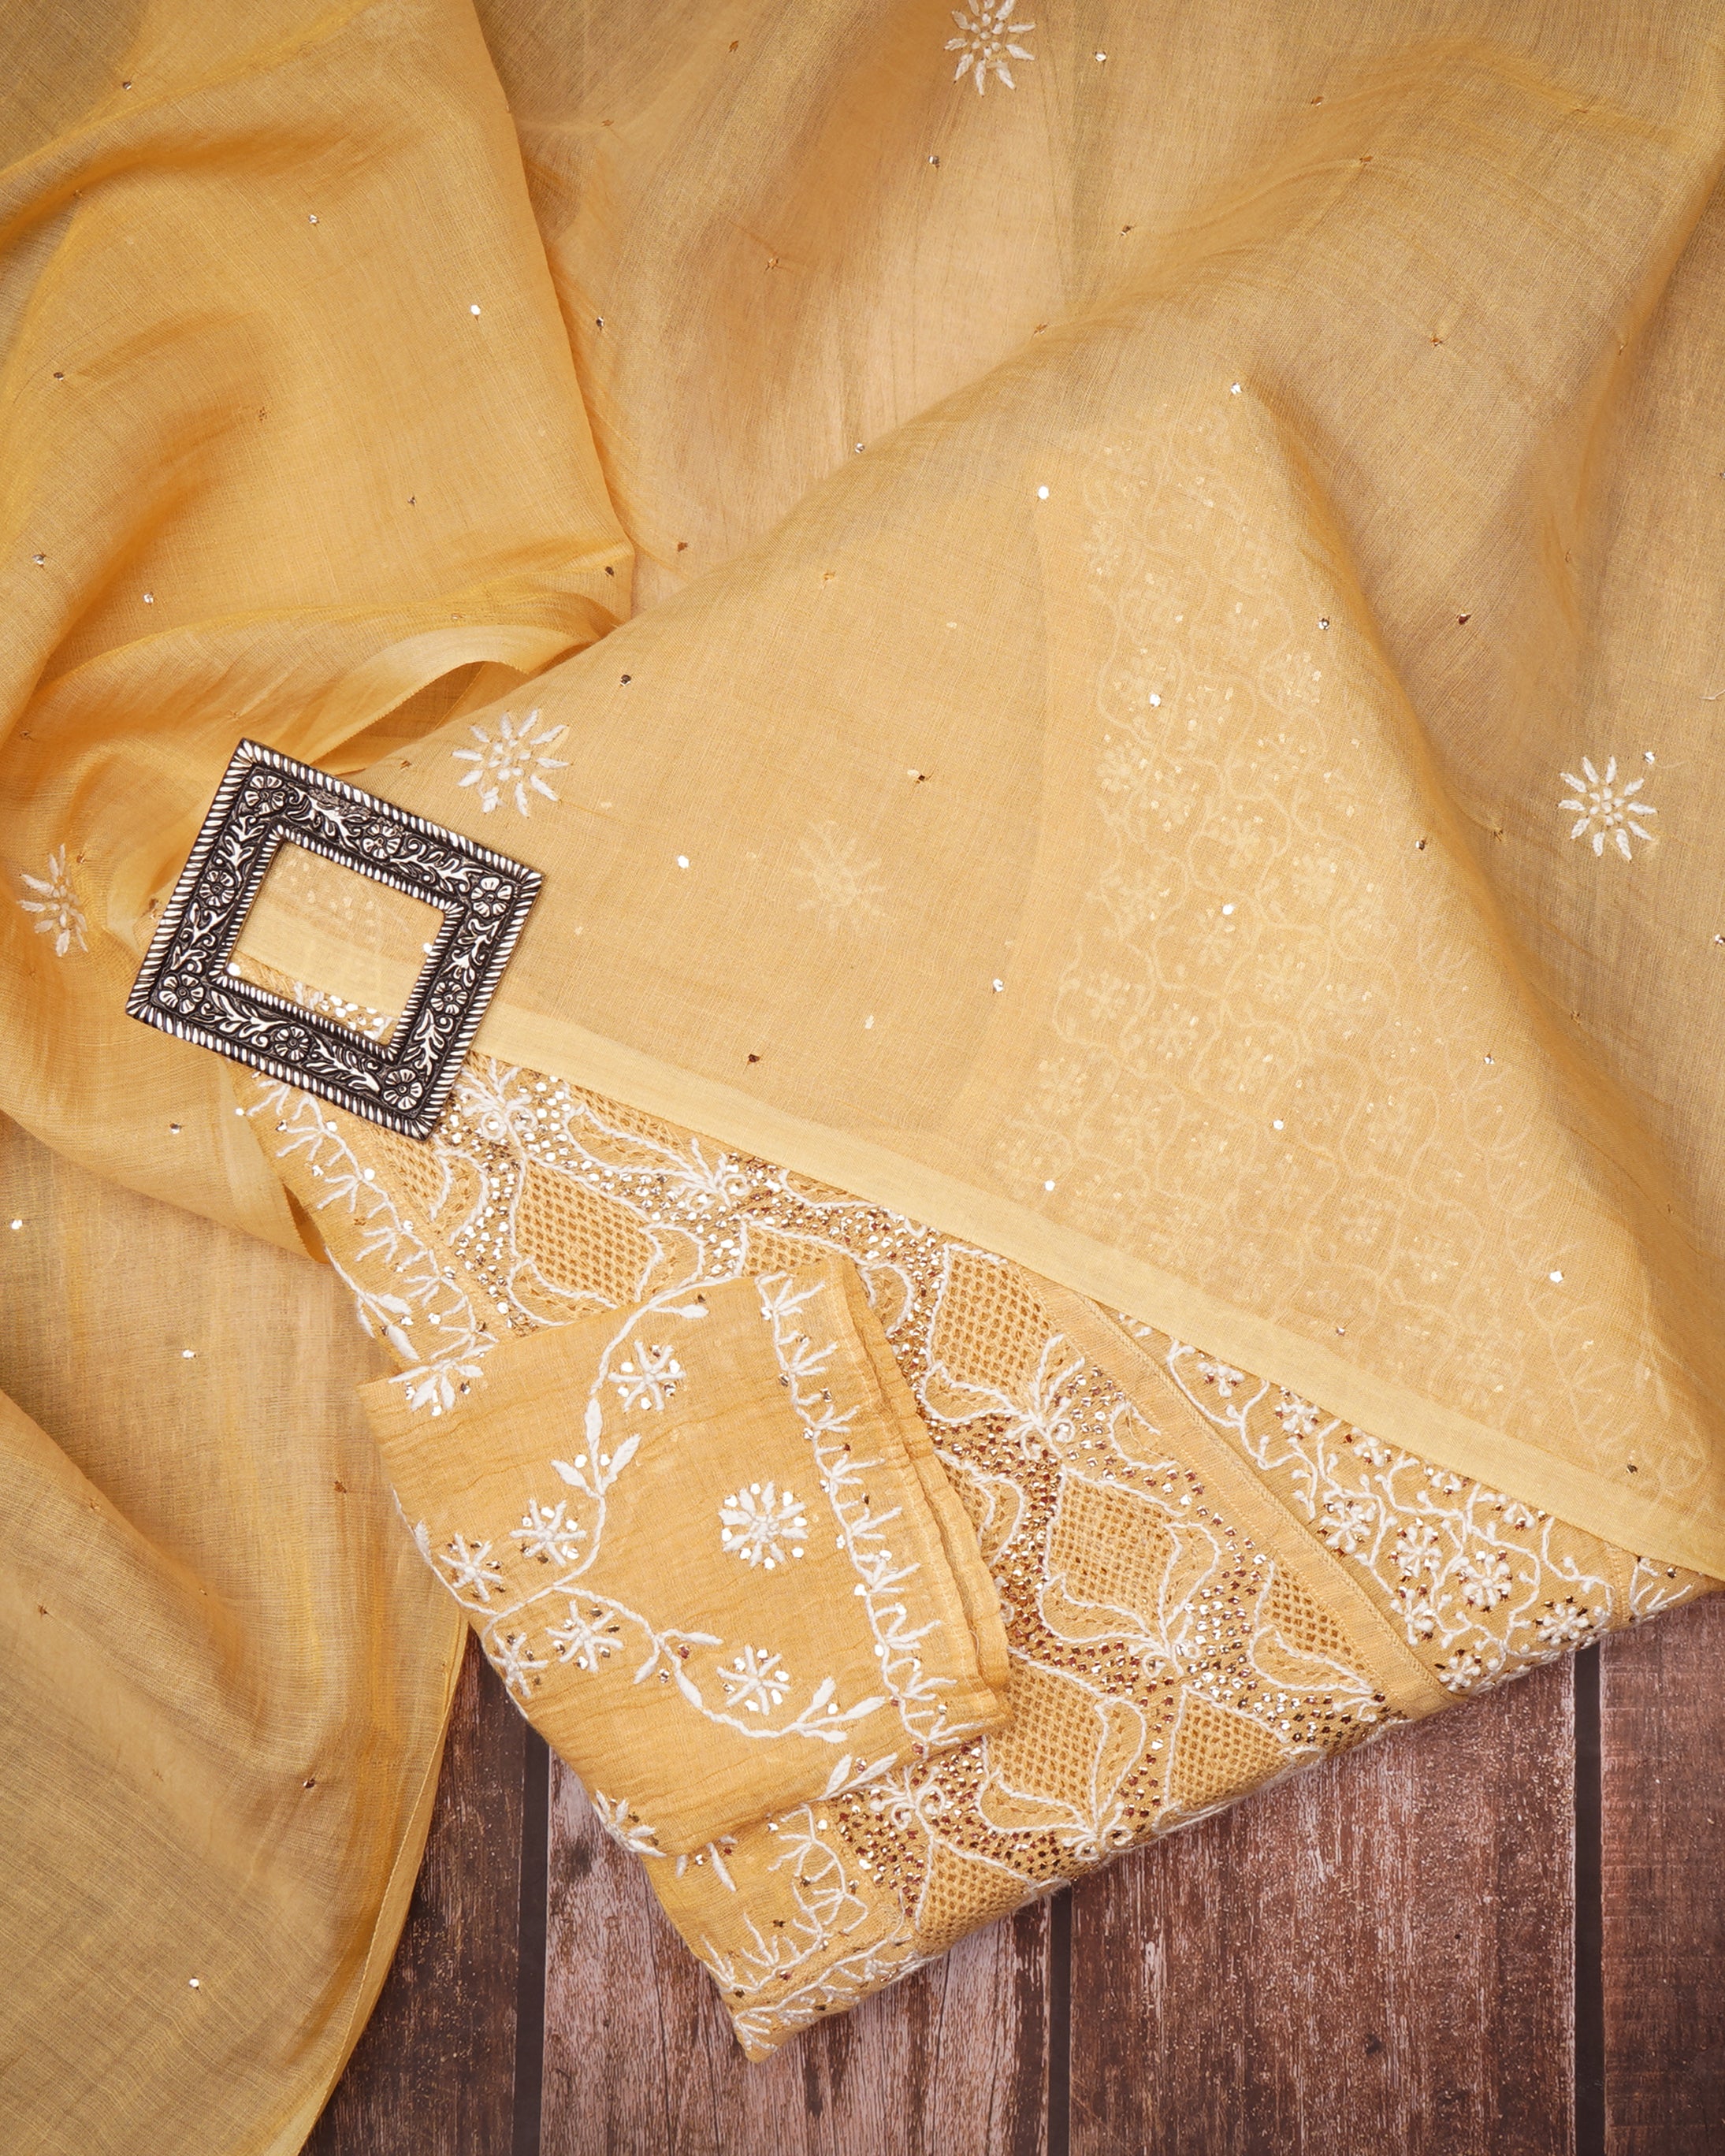 Flax Handcrafted Mukaish Work Chikankari Embroidered Tissue Chanderi Unstitched Suit Set (Top & Dupatta)